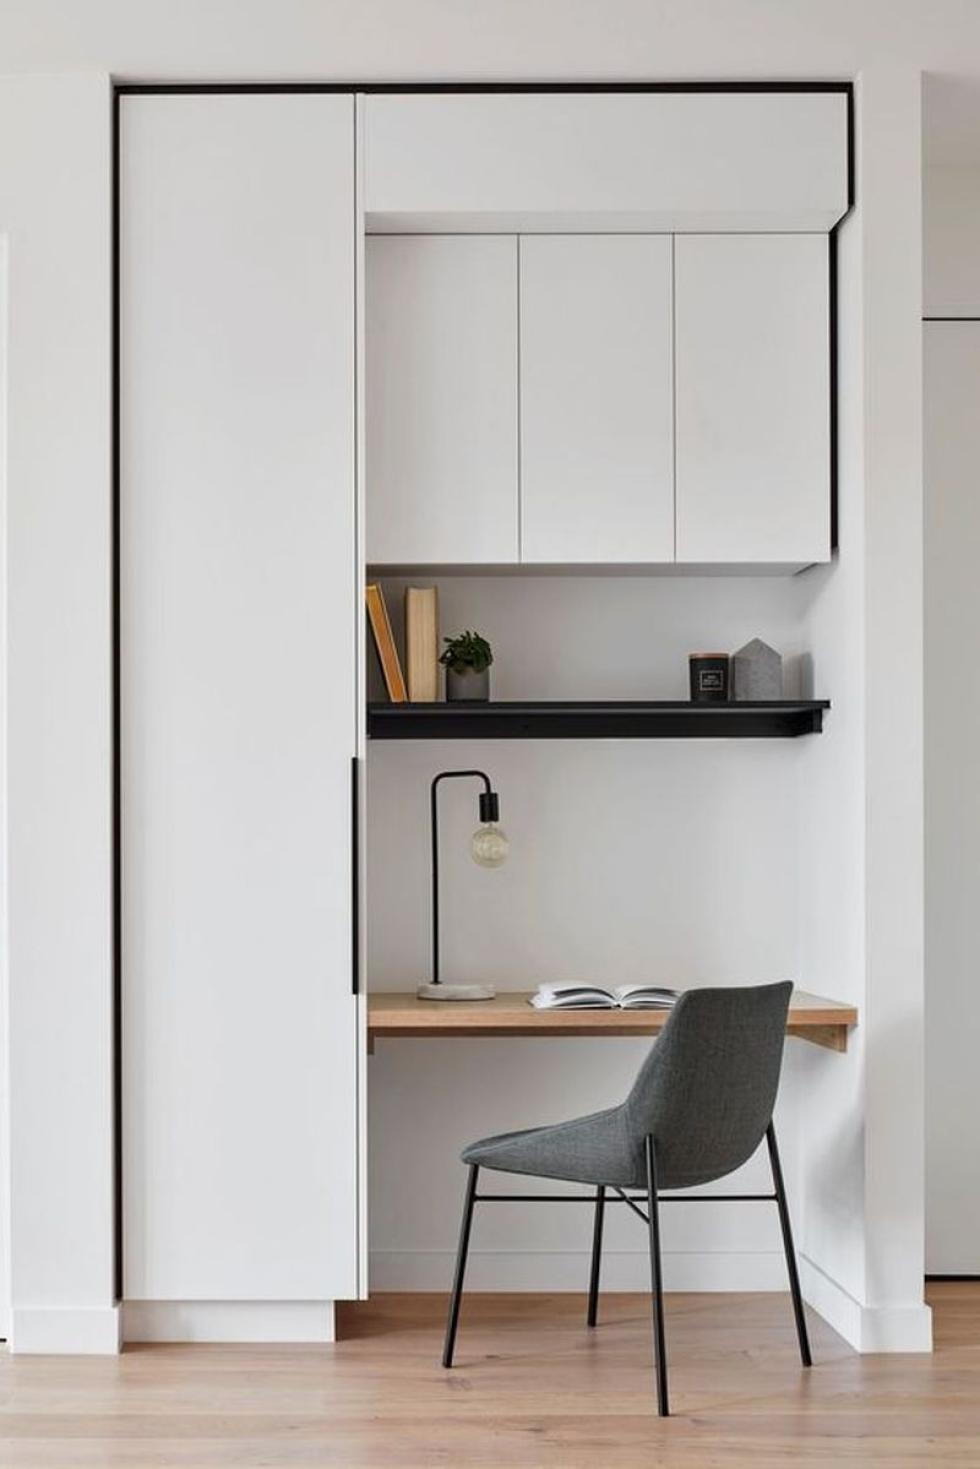 Homeoffice aus Ikea Korpussen: Kleiderschrank und Schreibtisch in weiß und schwarz